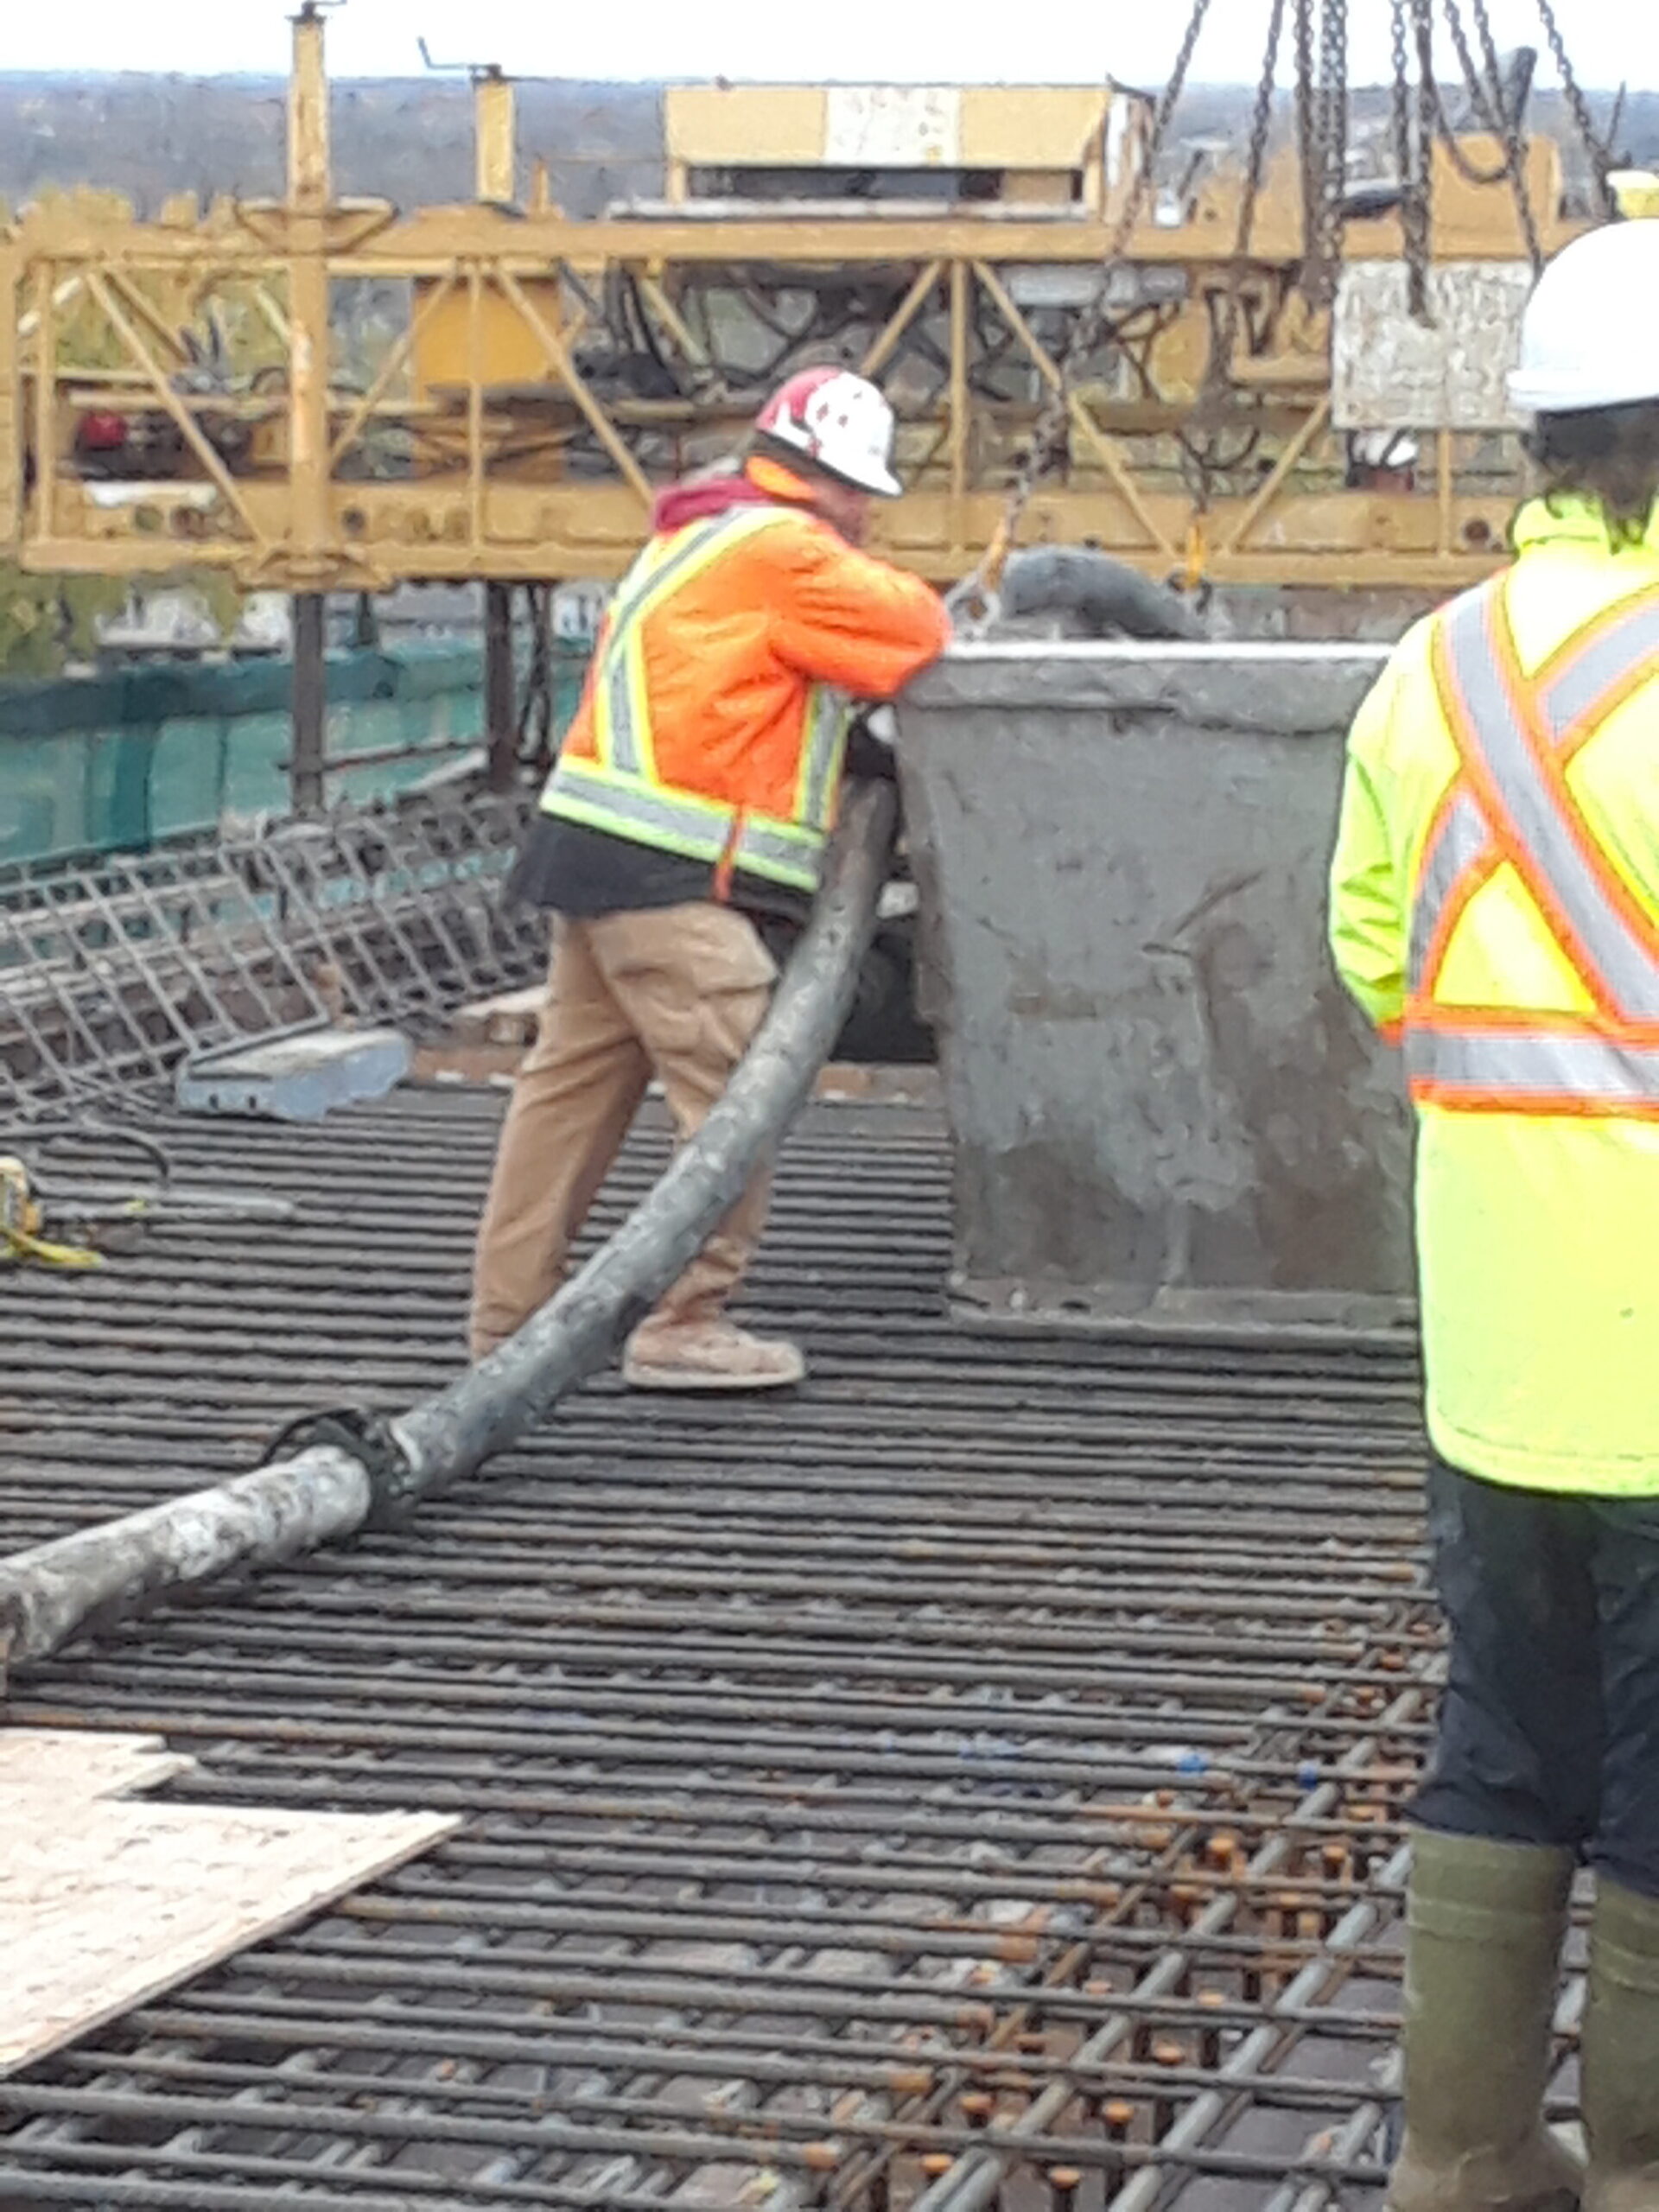 Offloading concrete slurry before concrete placement